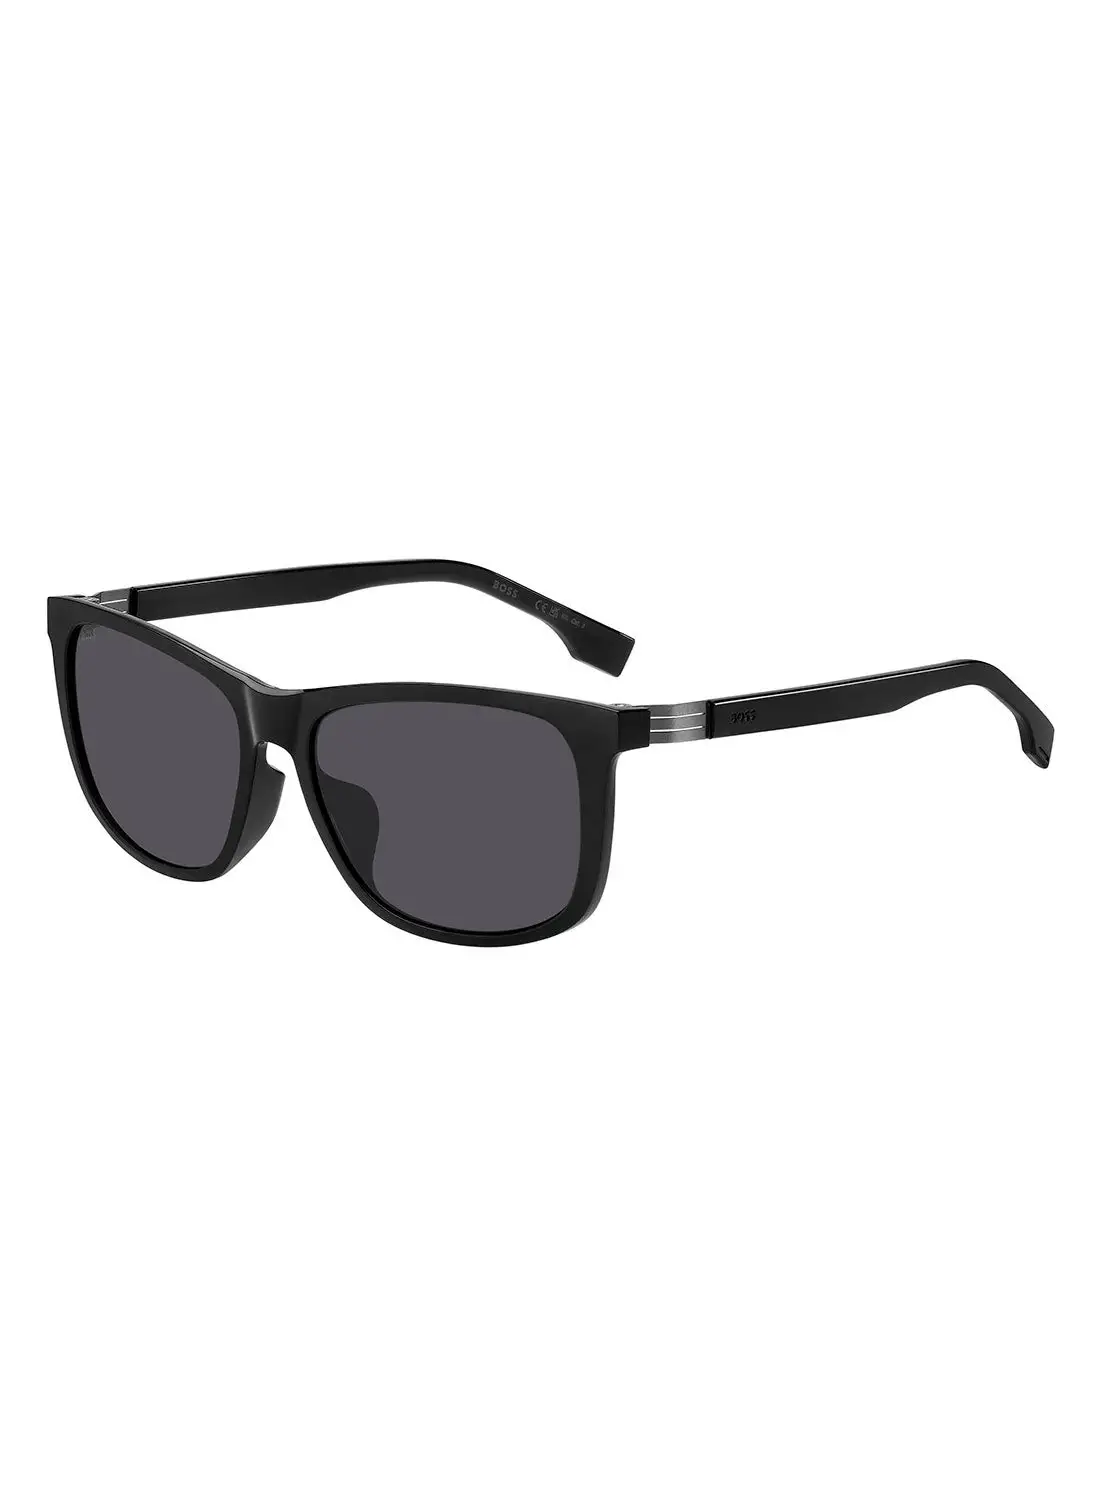 HUGO BOSS Men's UV Protection Rectangular Sunglasses - Boss 1617/F/S Black Millimeter - Lens Size: 59 Mm